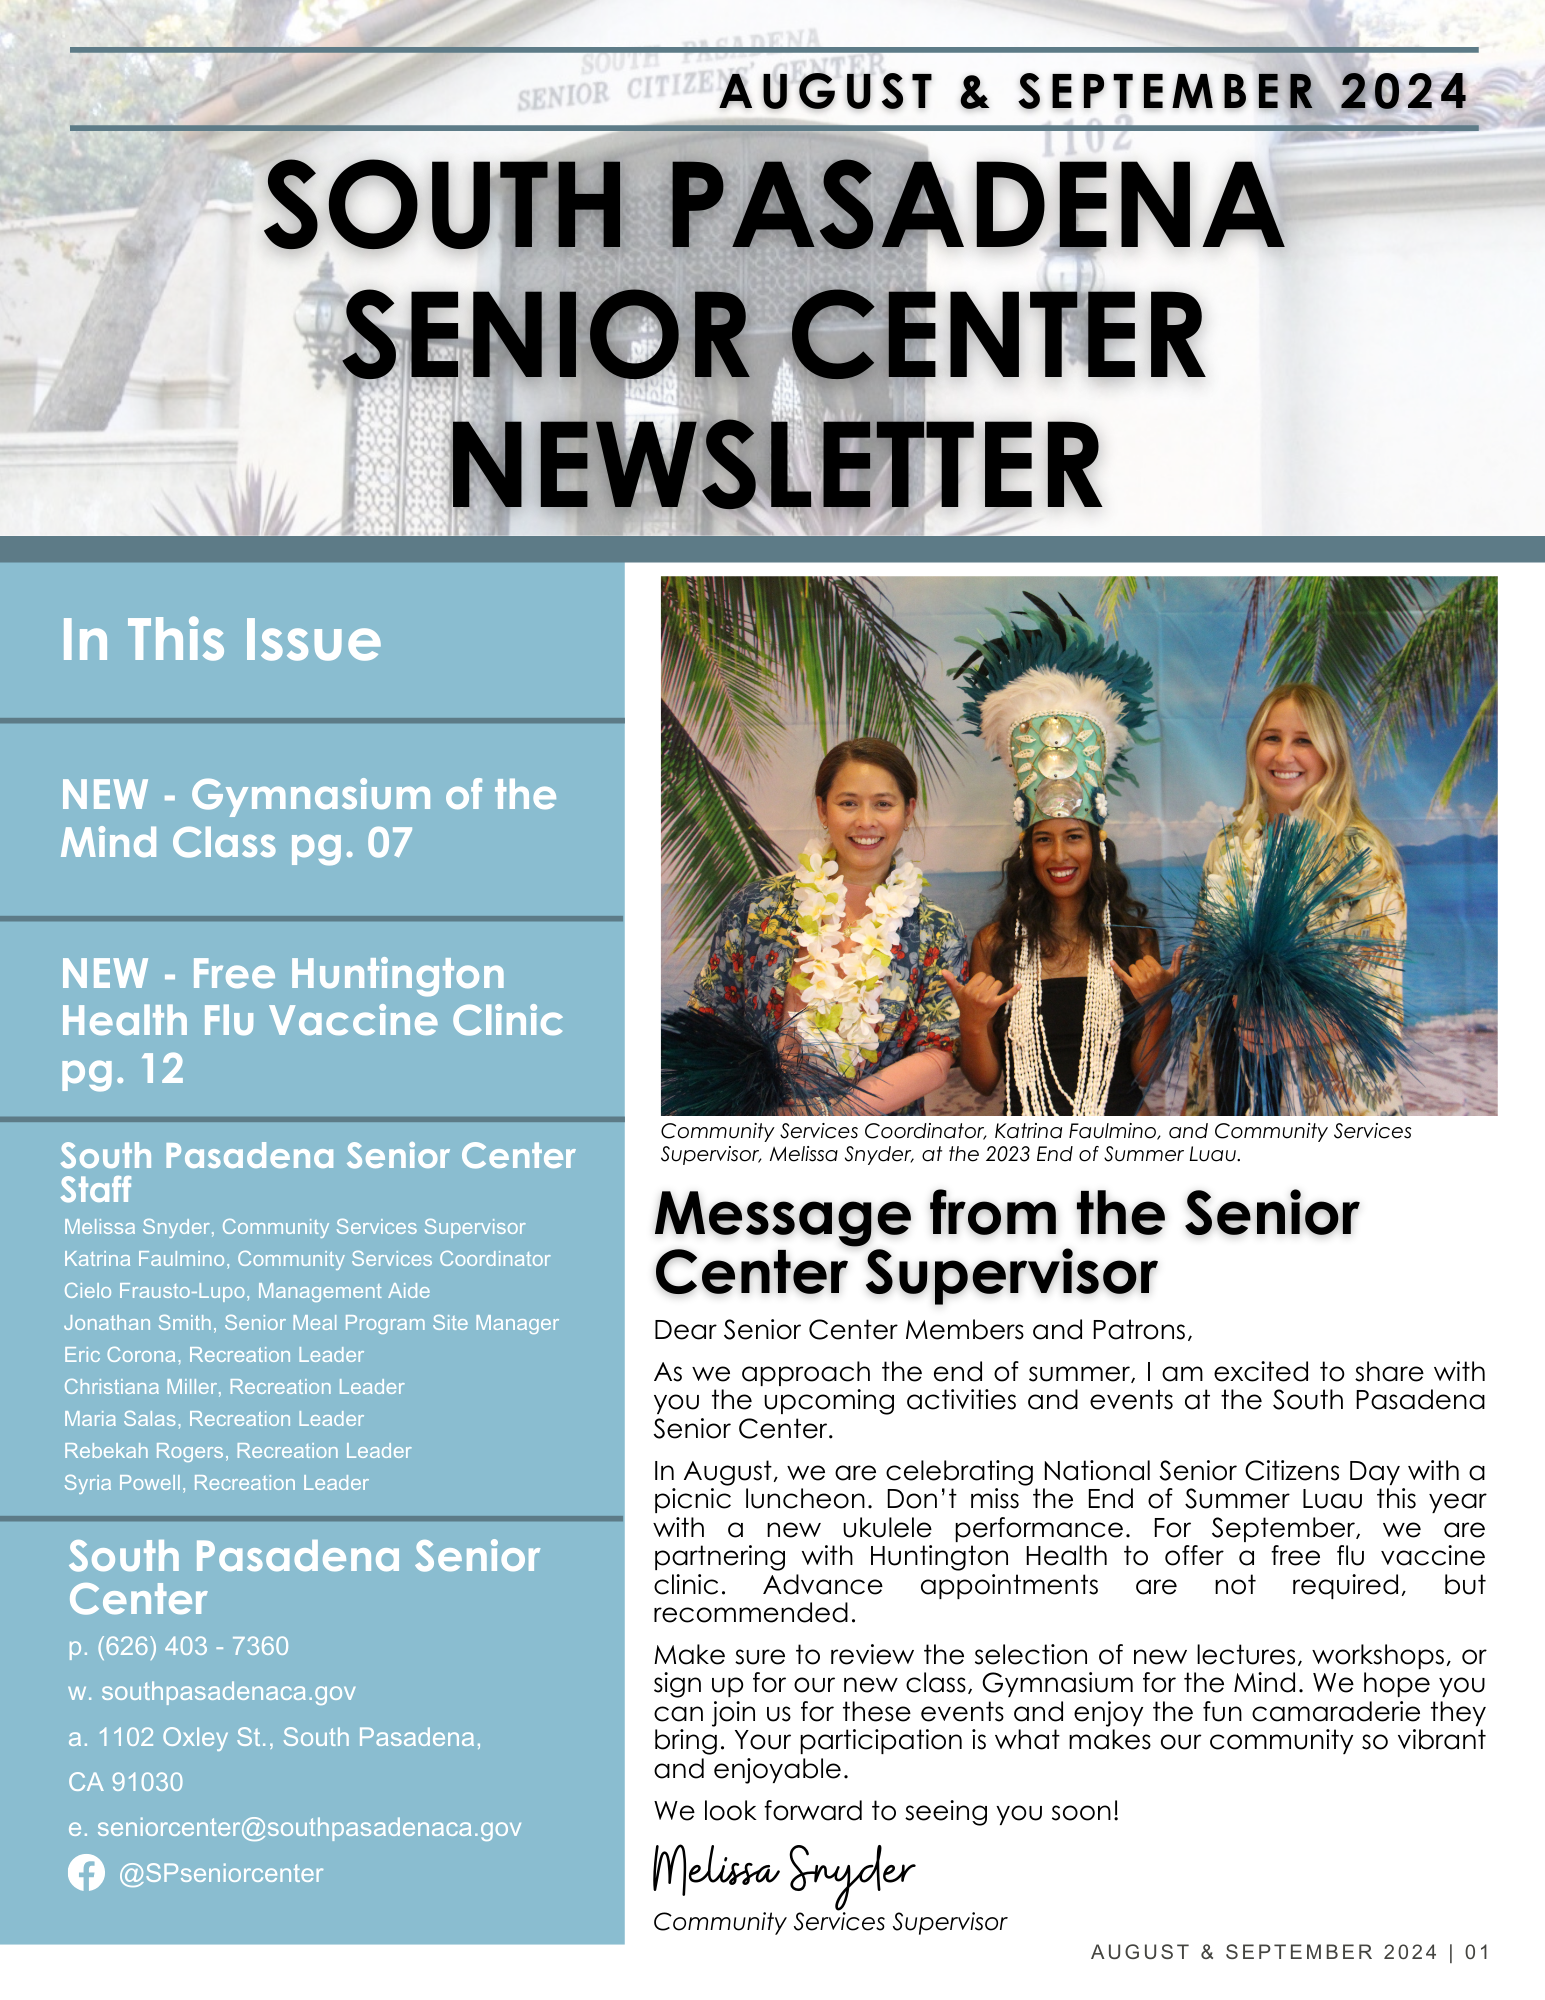 SC Newsletter - August & September 2024.png